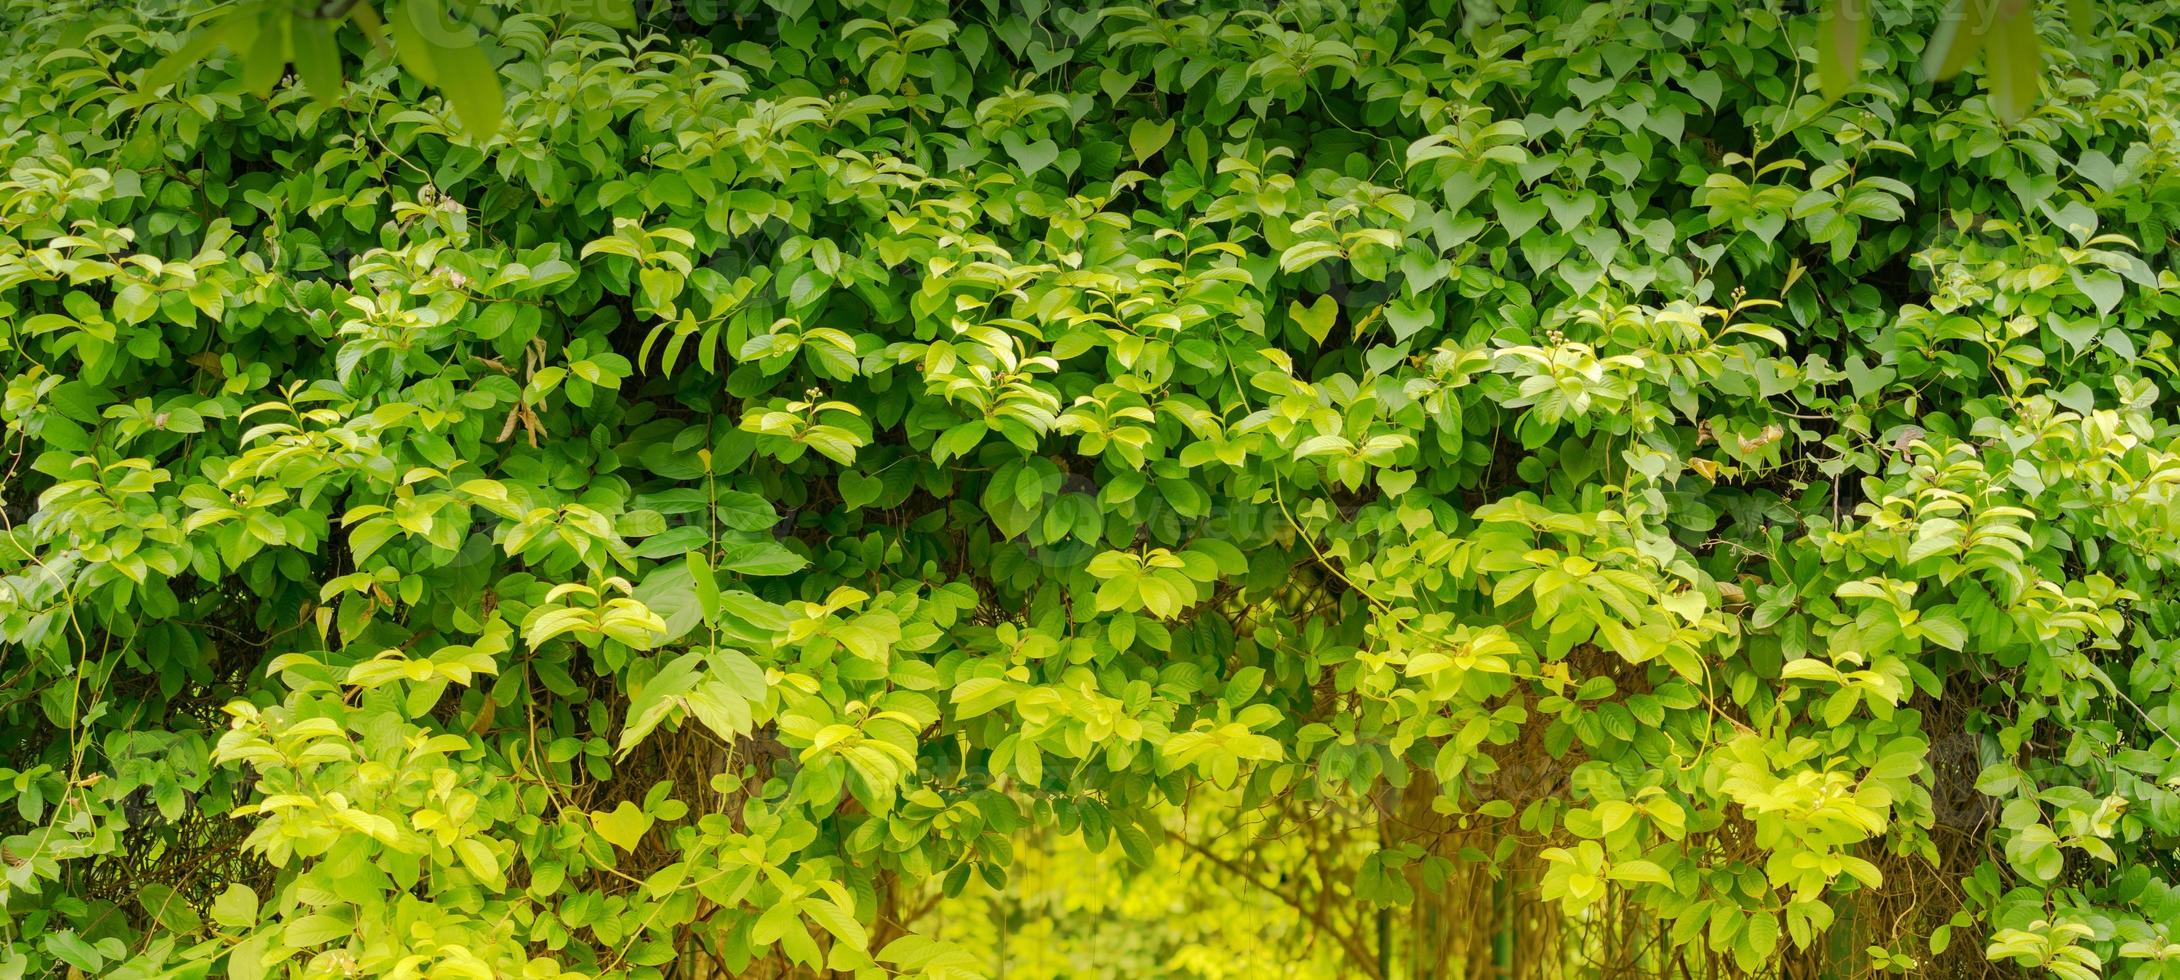 naturligt grönt blad, färska gröna trädblad i solljus foto